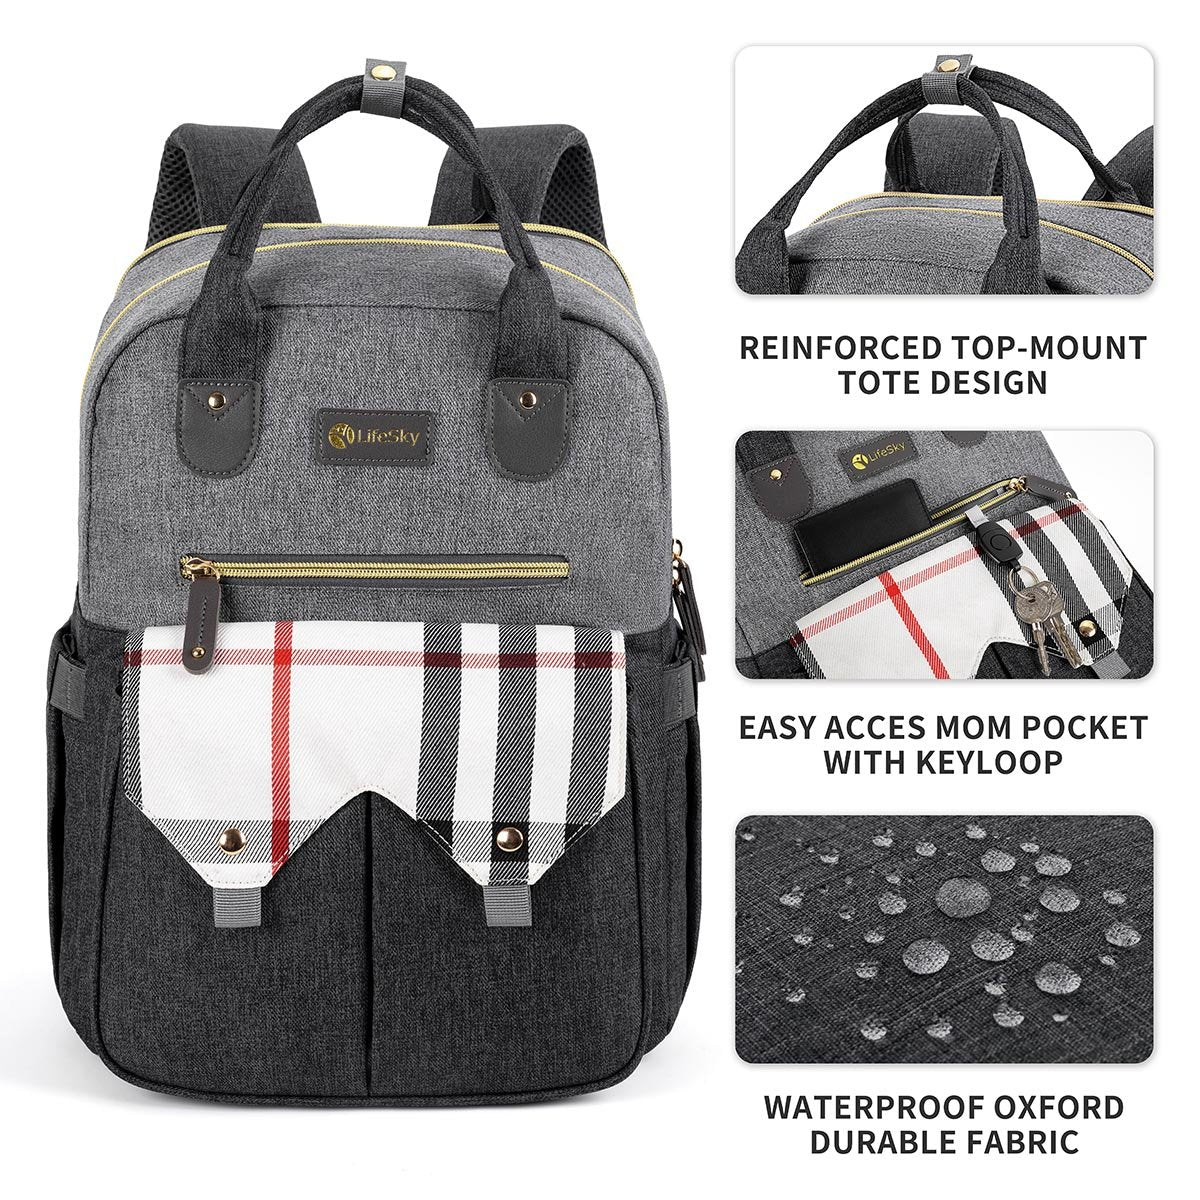 LifeSky<sup>&reg;</sup> Diaper Bag Backpack